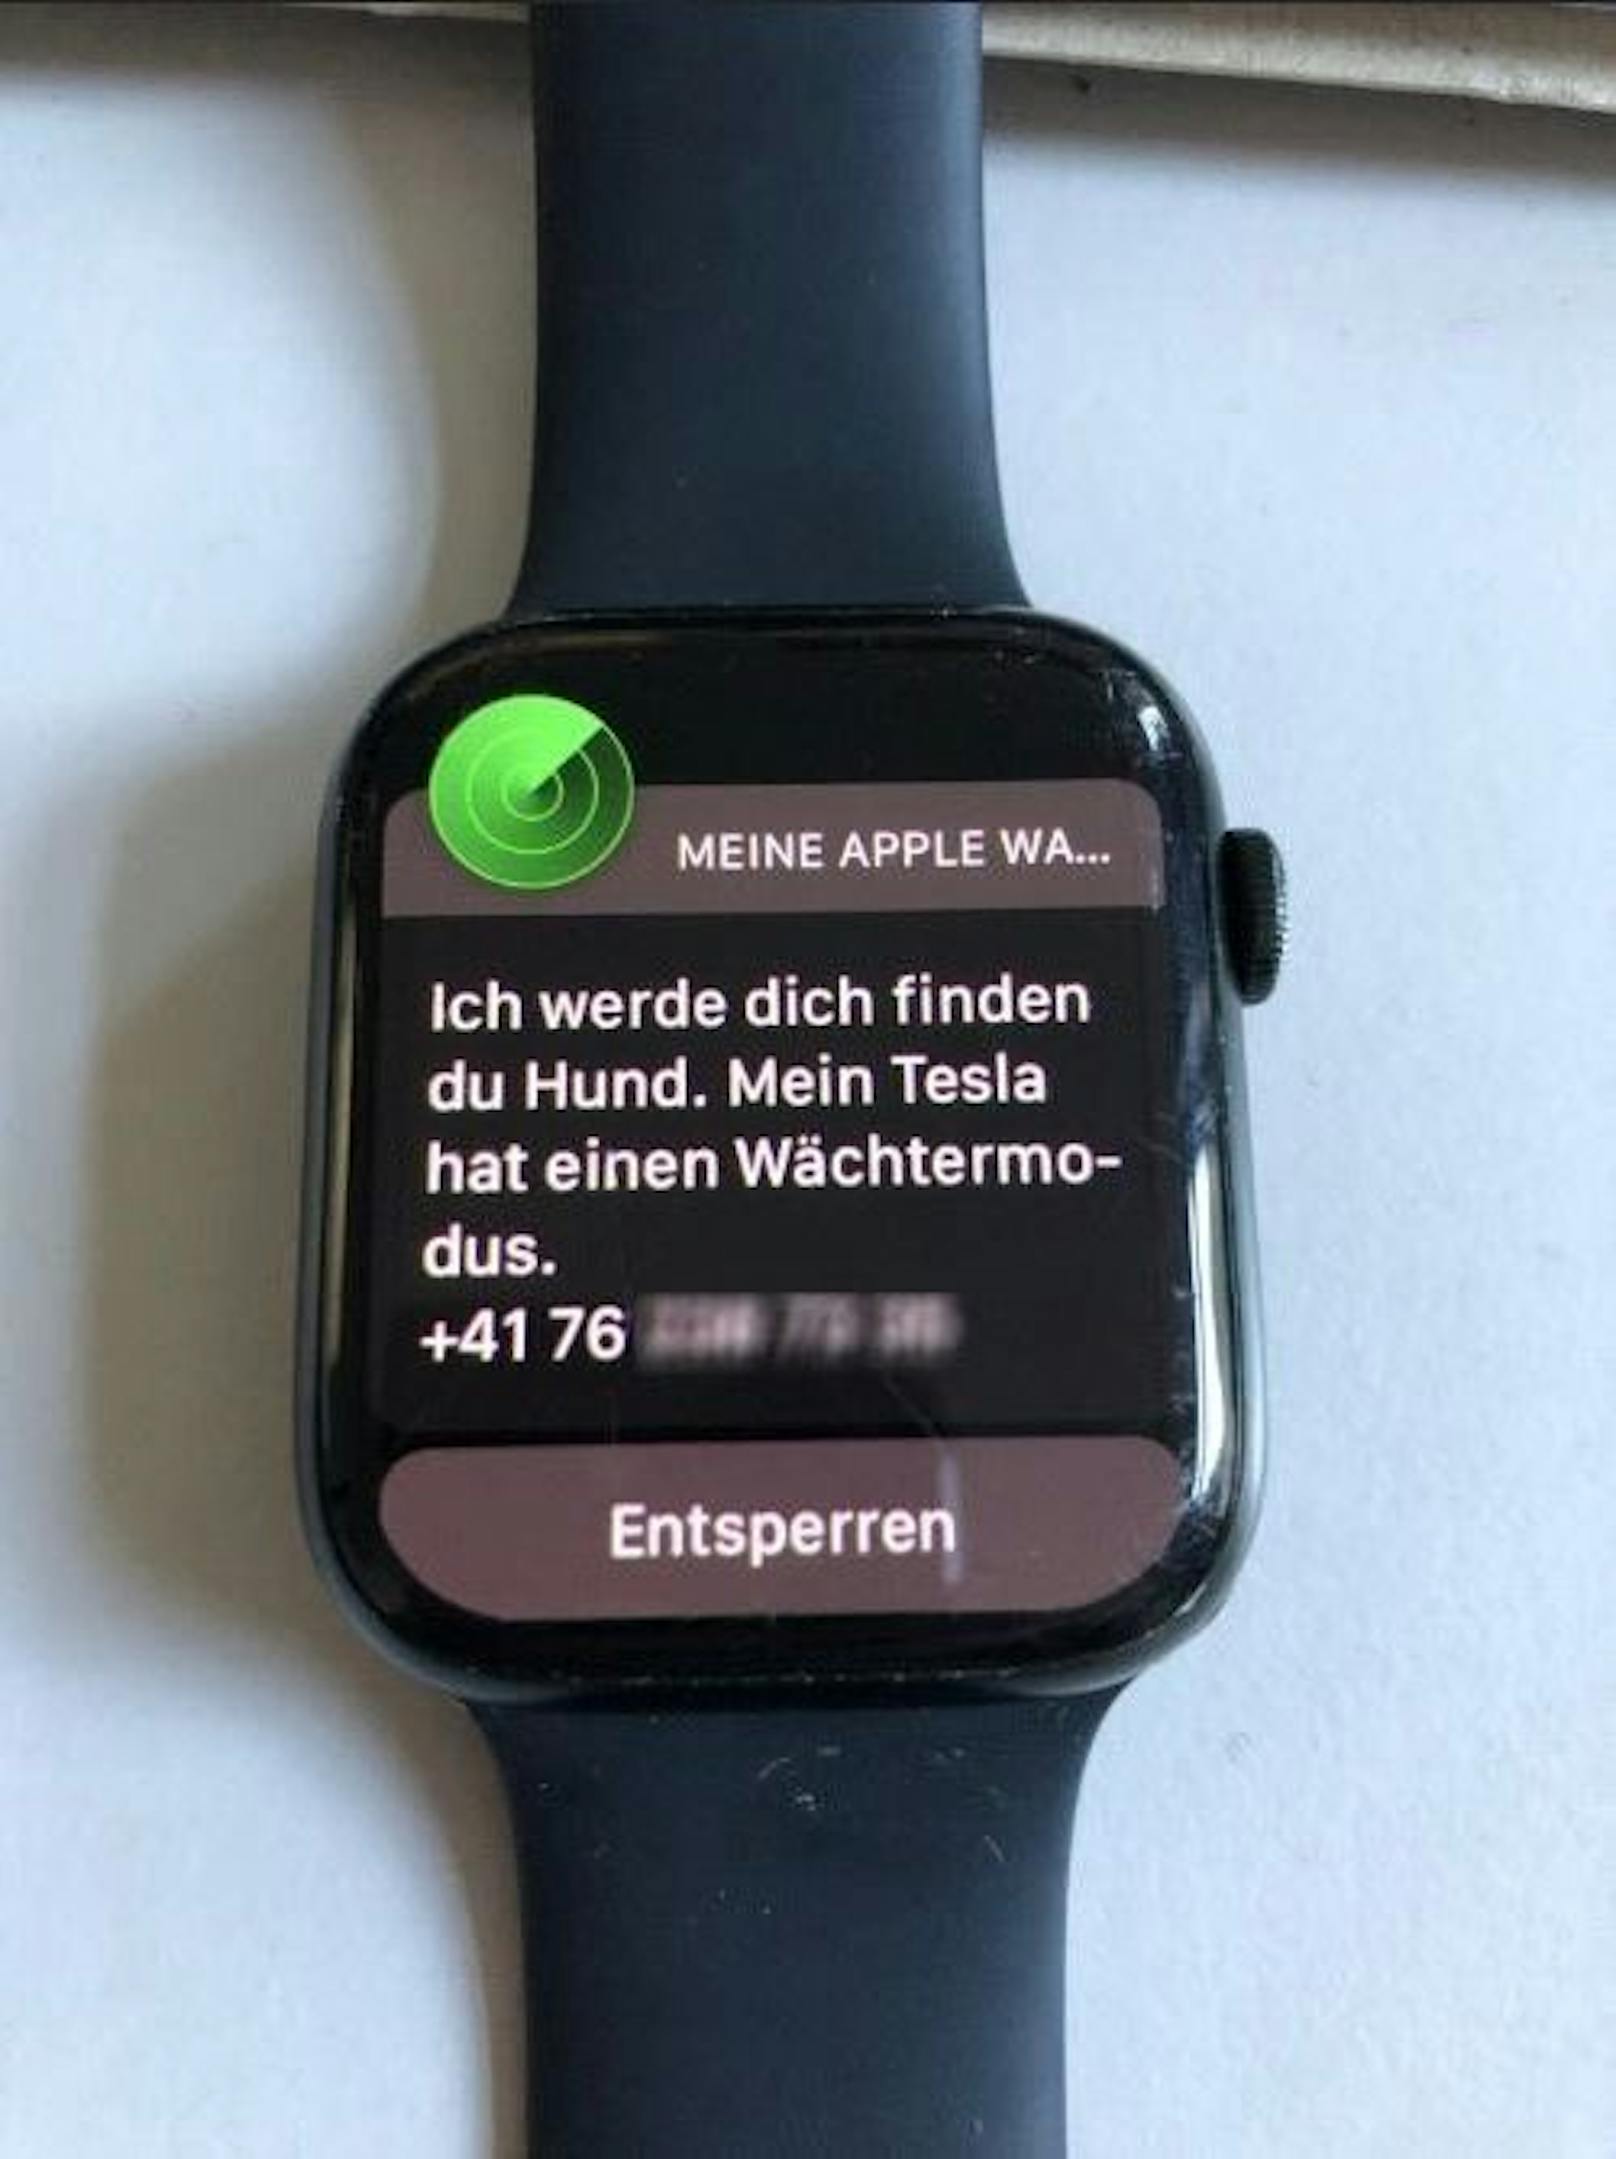 "Ich werde dich finden, du Hund." Das schrieb vermutlich der Bestohlene dem Dieb, der seine Apple Watch entwendete. Die Nachricht stammt von einer Schweizer Nummer. 